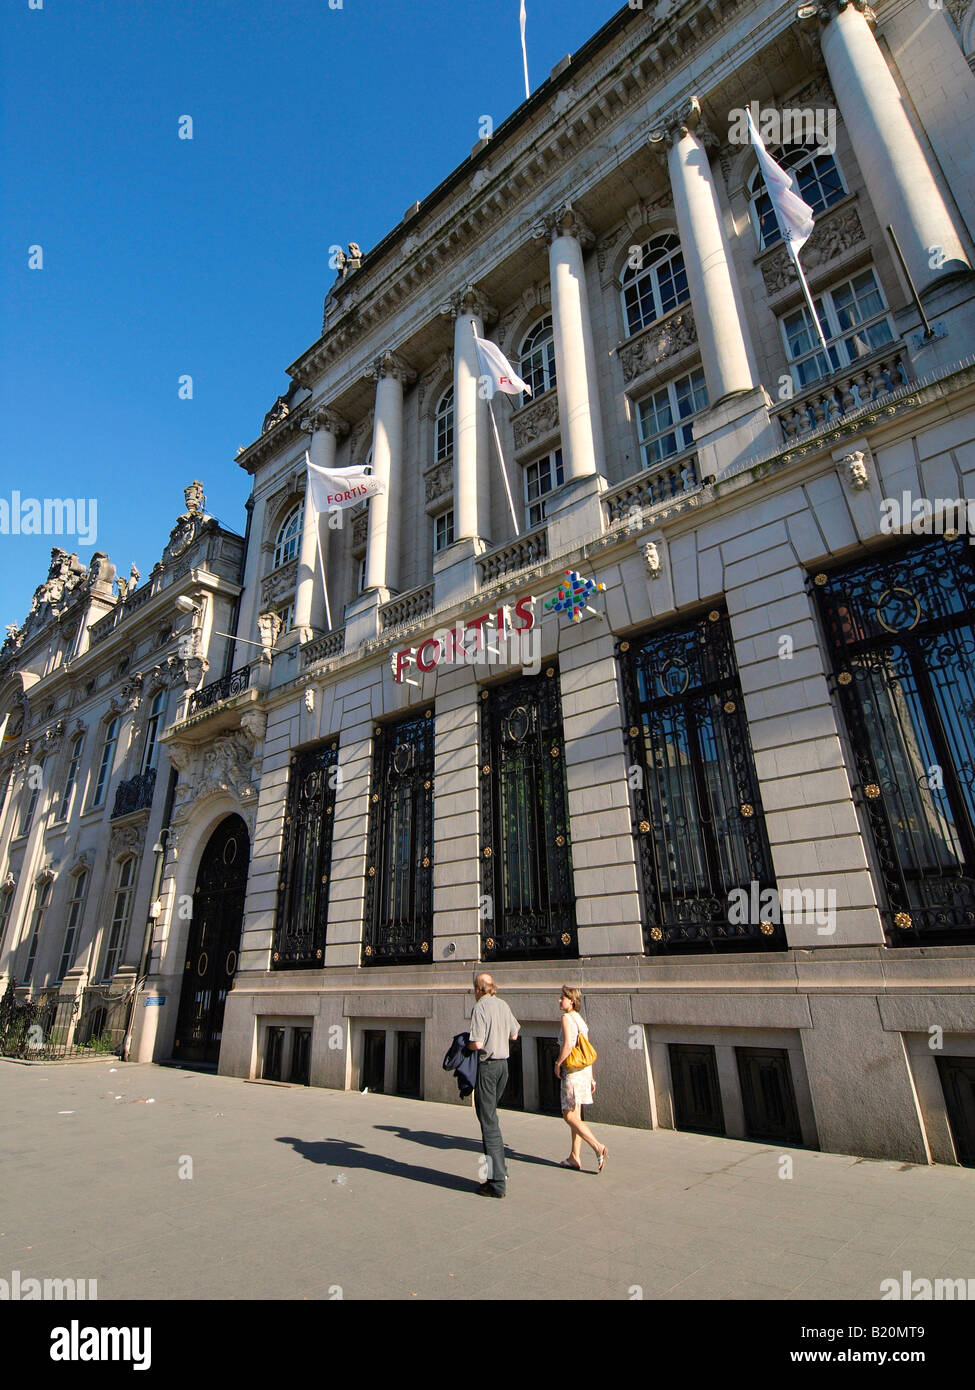 Fortis Bank, aufbauend auf der Meir in Antwerpen Flandern Belgien Stockfoto